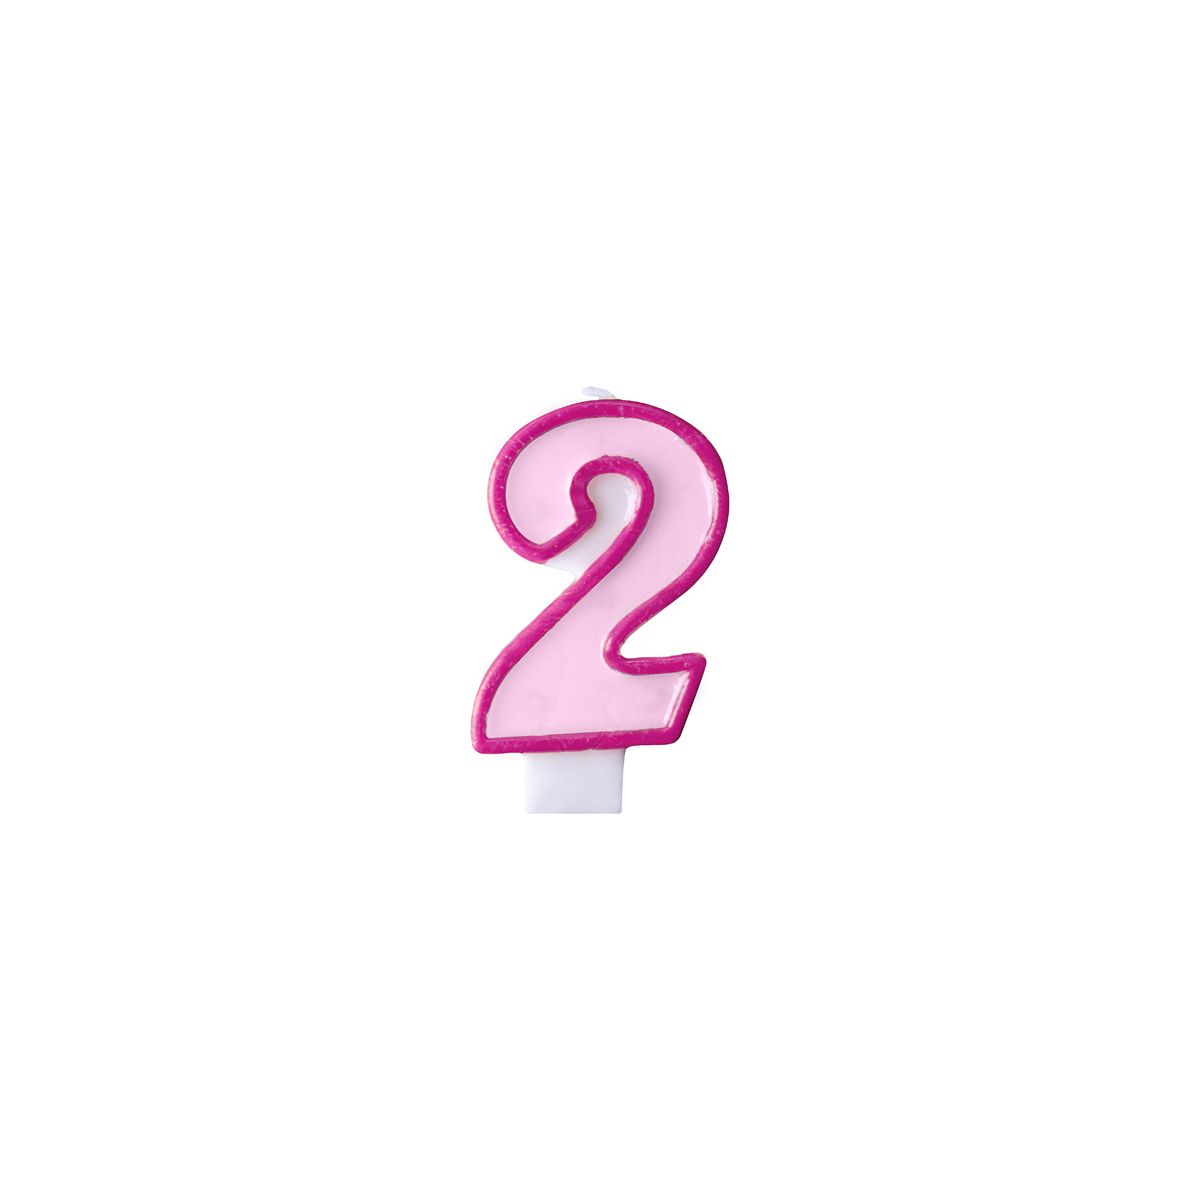 Świeczka urodzinowa Cyferka 2 w kolorze różowym 7 centymetrów Partydeco (SCU1-2-006)